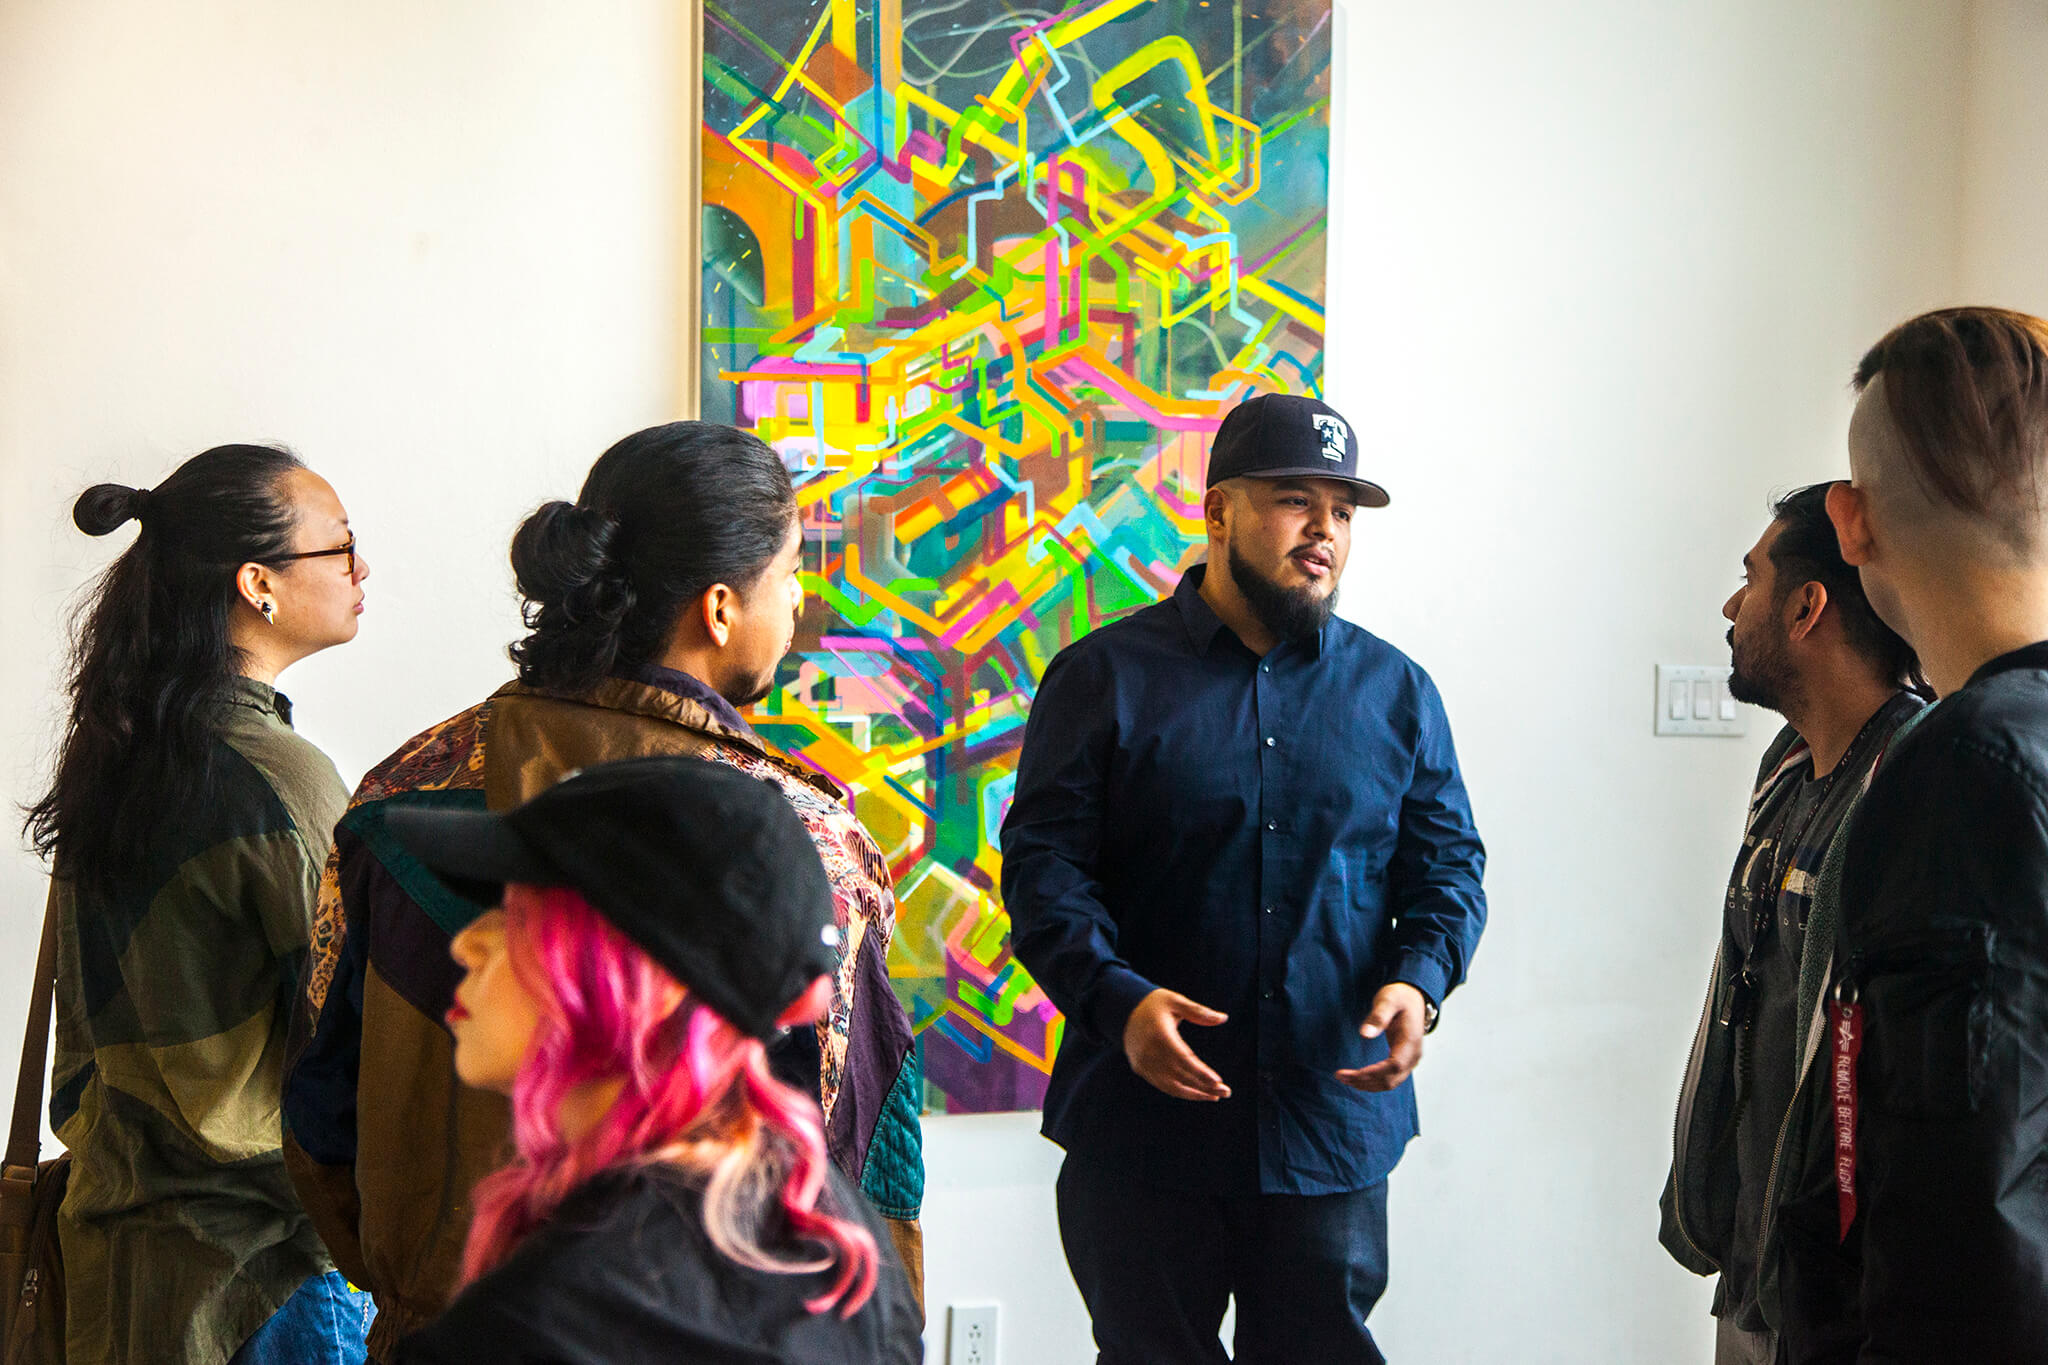 NicolasGonzalez speaks to patrons in front of his art